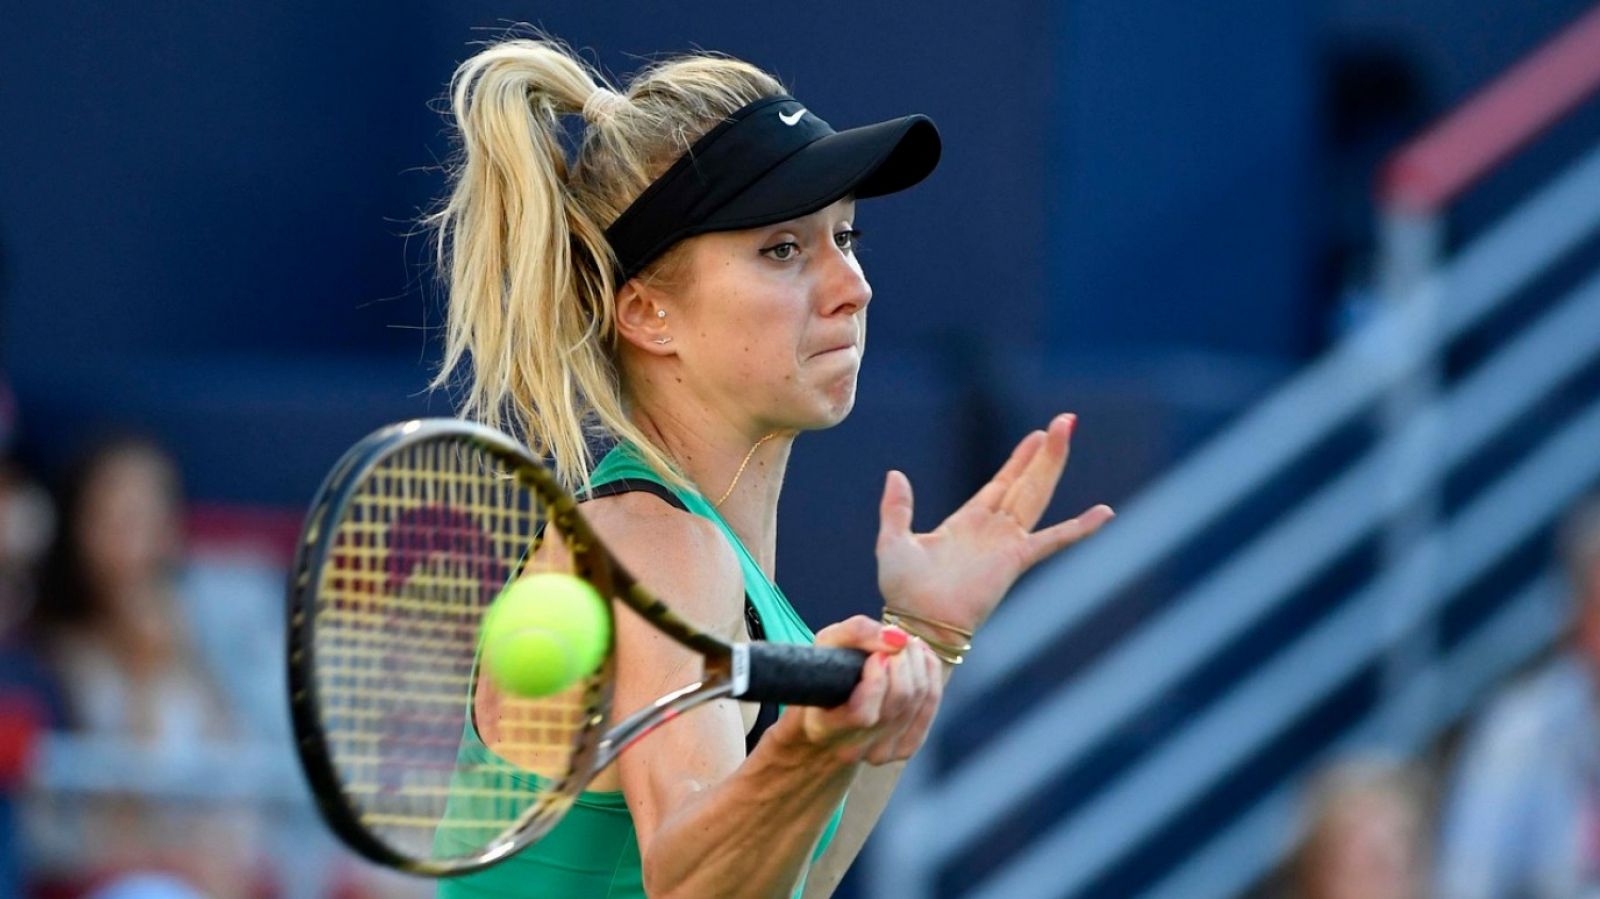 Tenis - WTA Torneo Cincinnati (EEUU): E. Svitolina - S. Kuznetsova